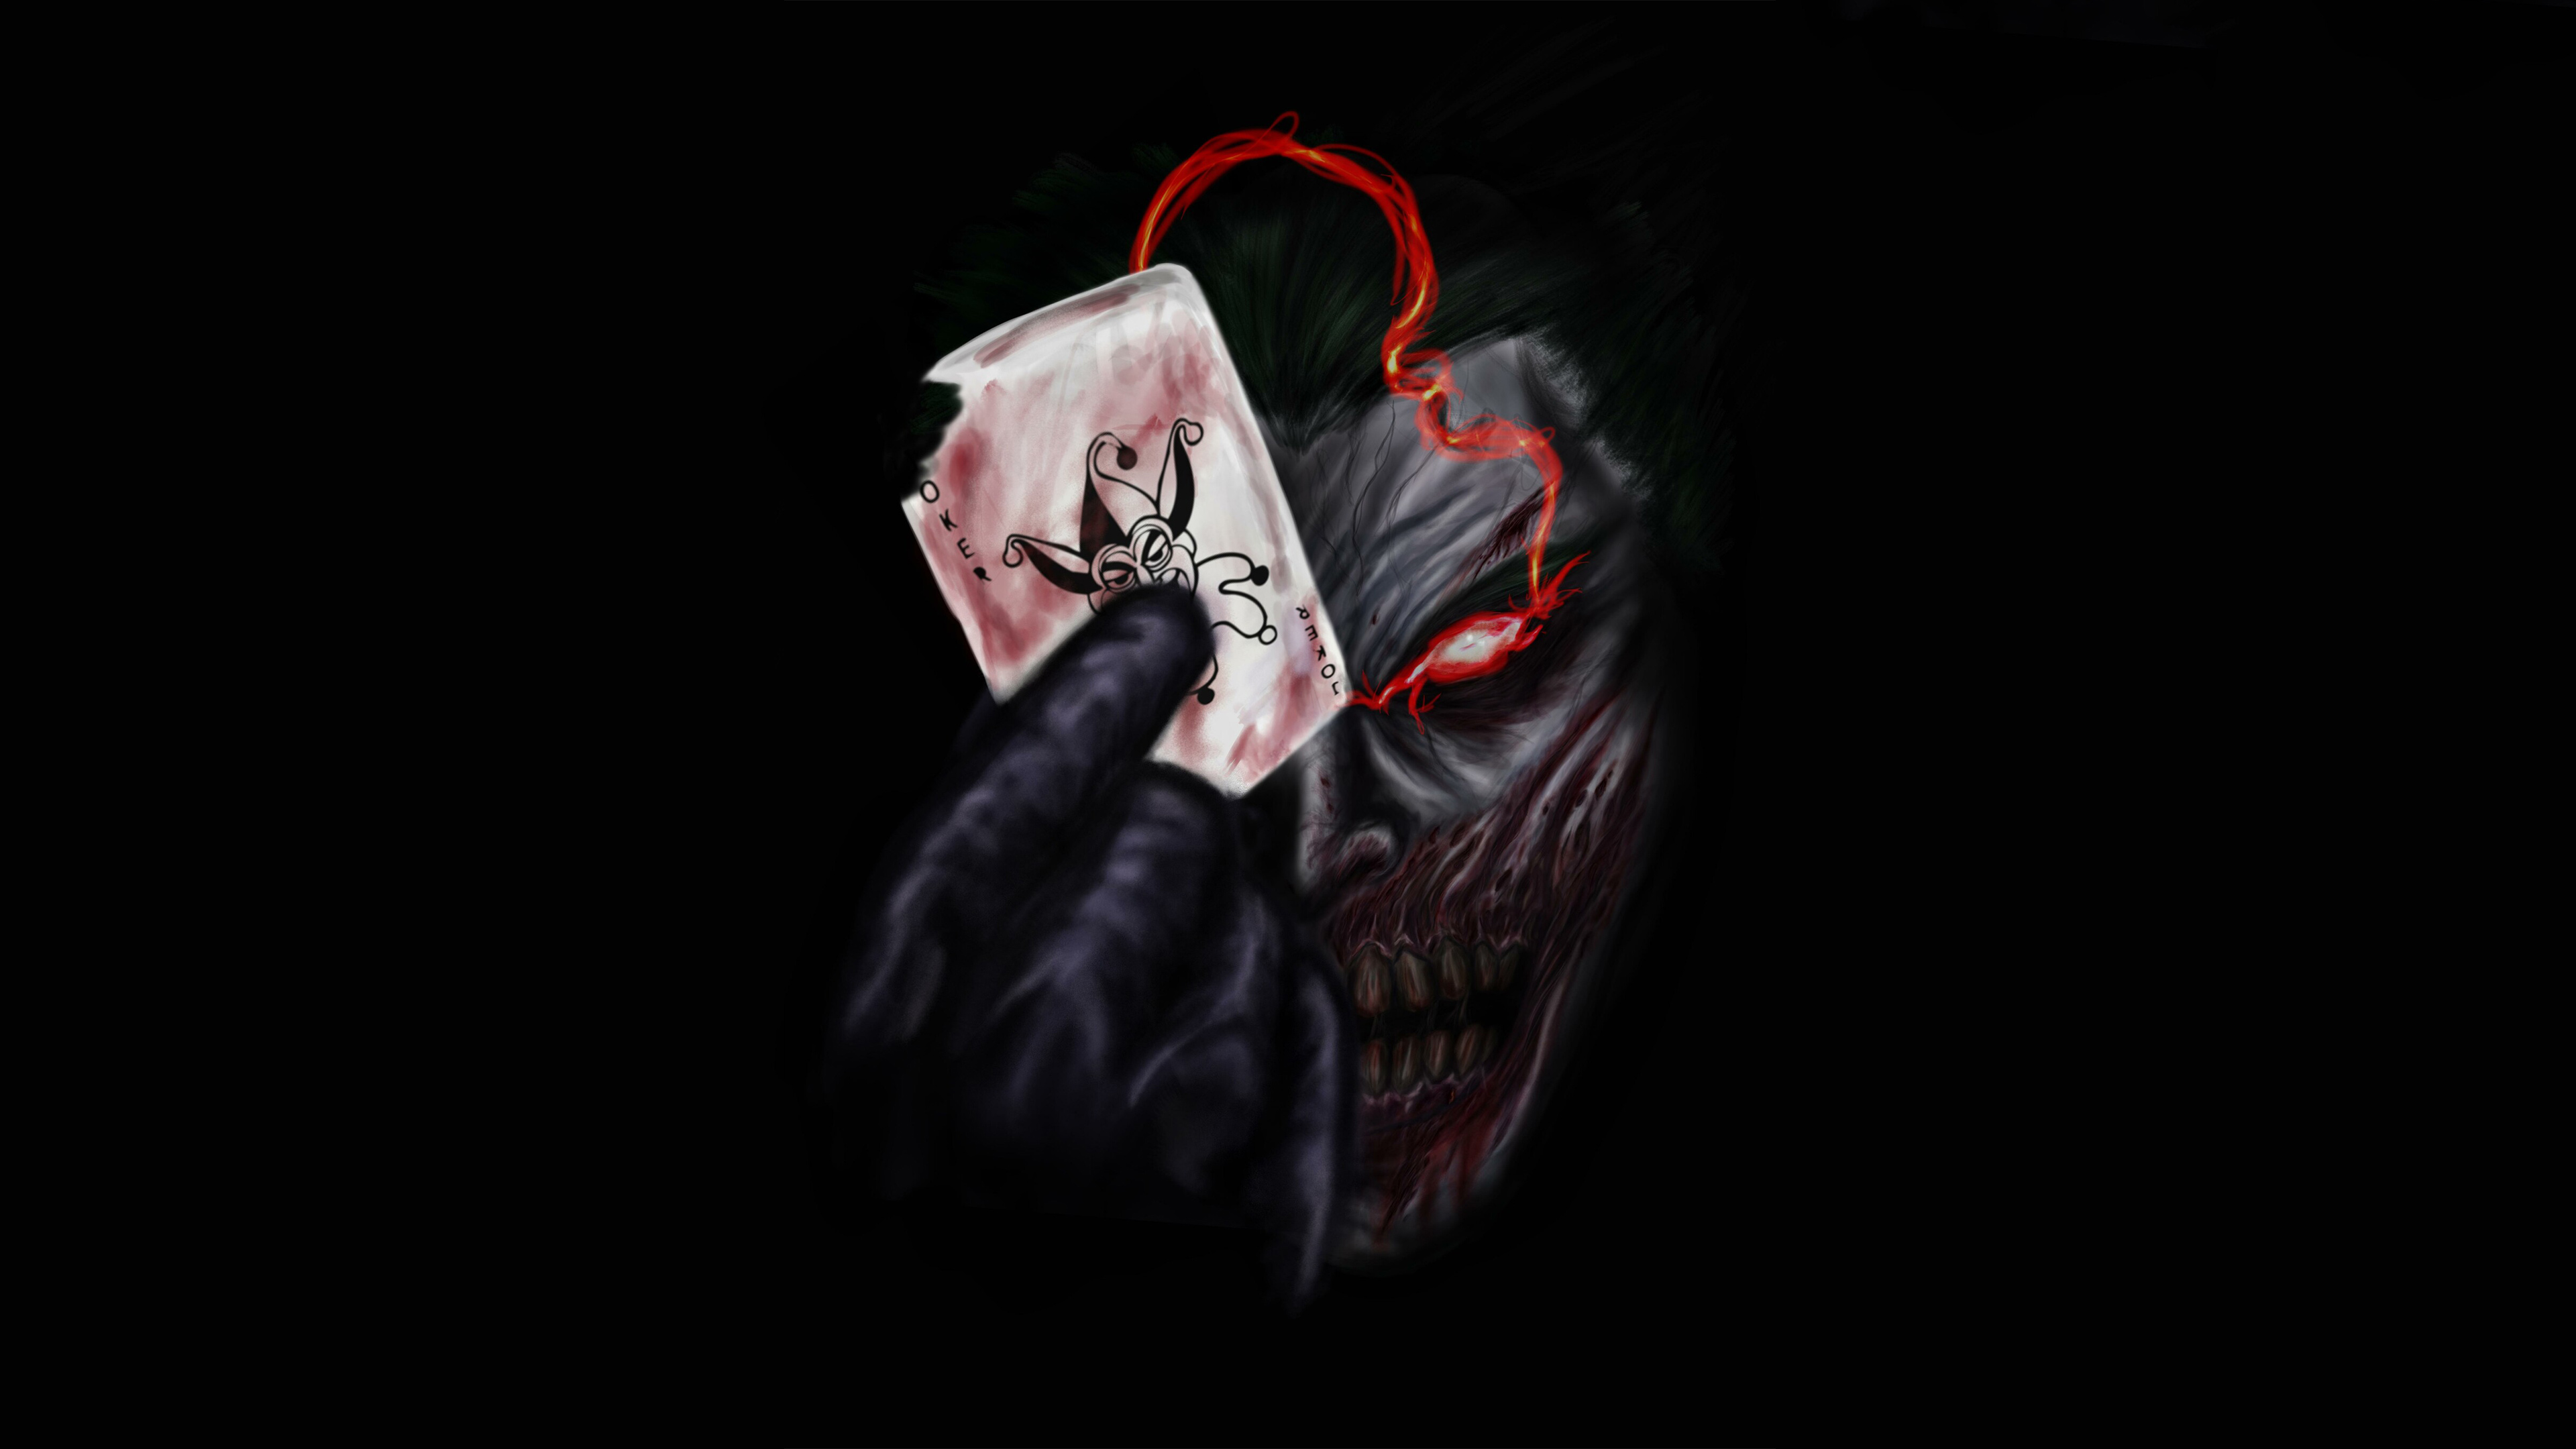 Joker 4k Ultra HD Wallpaper by Herber Crispin